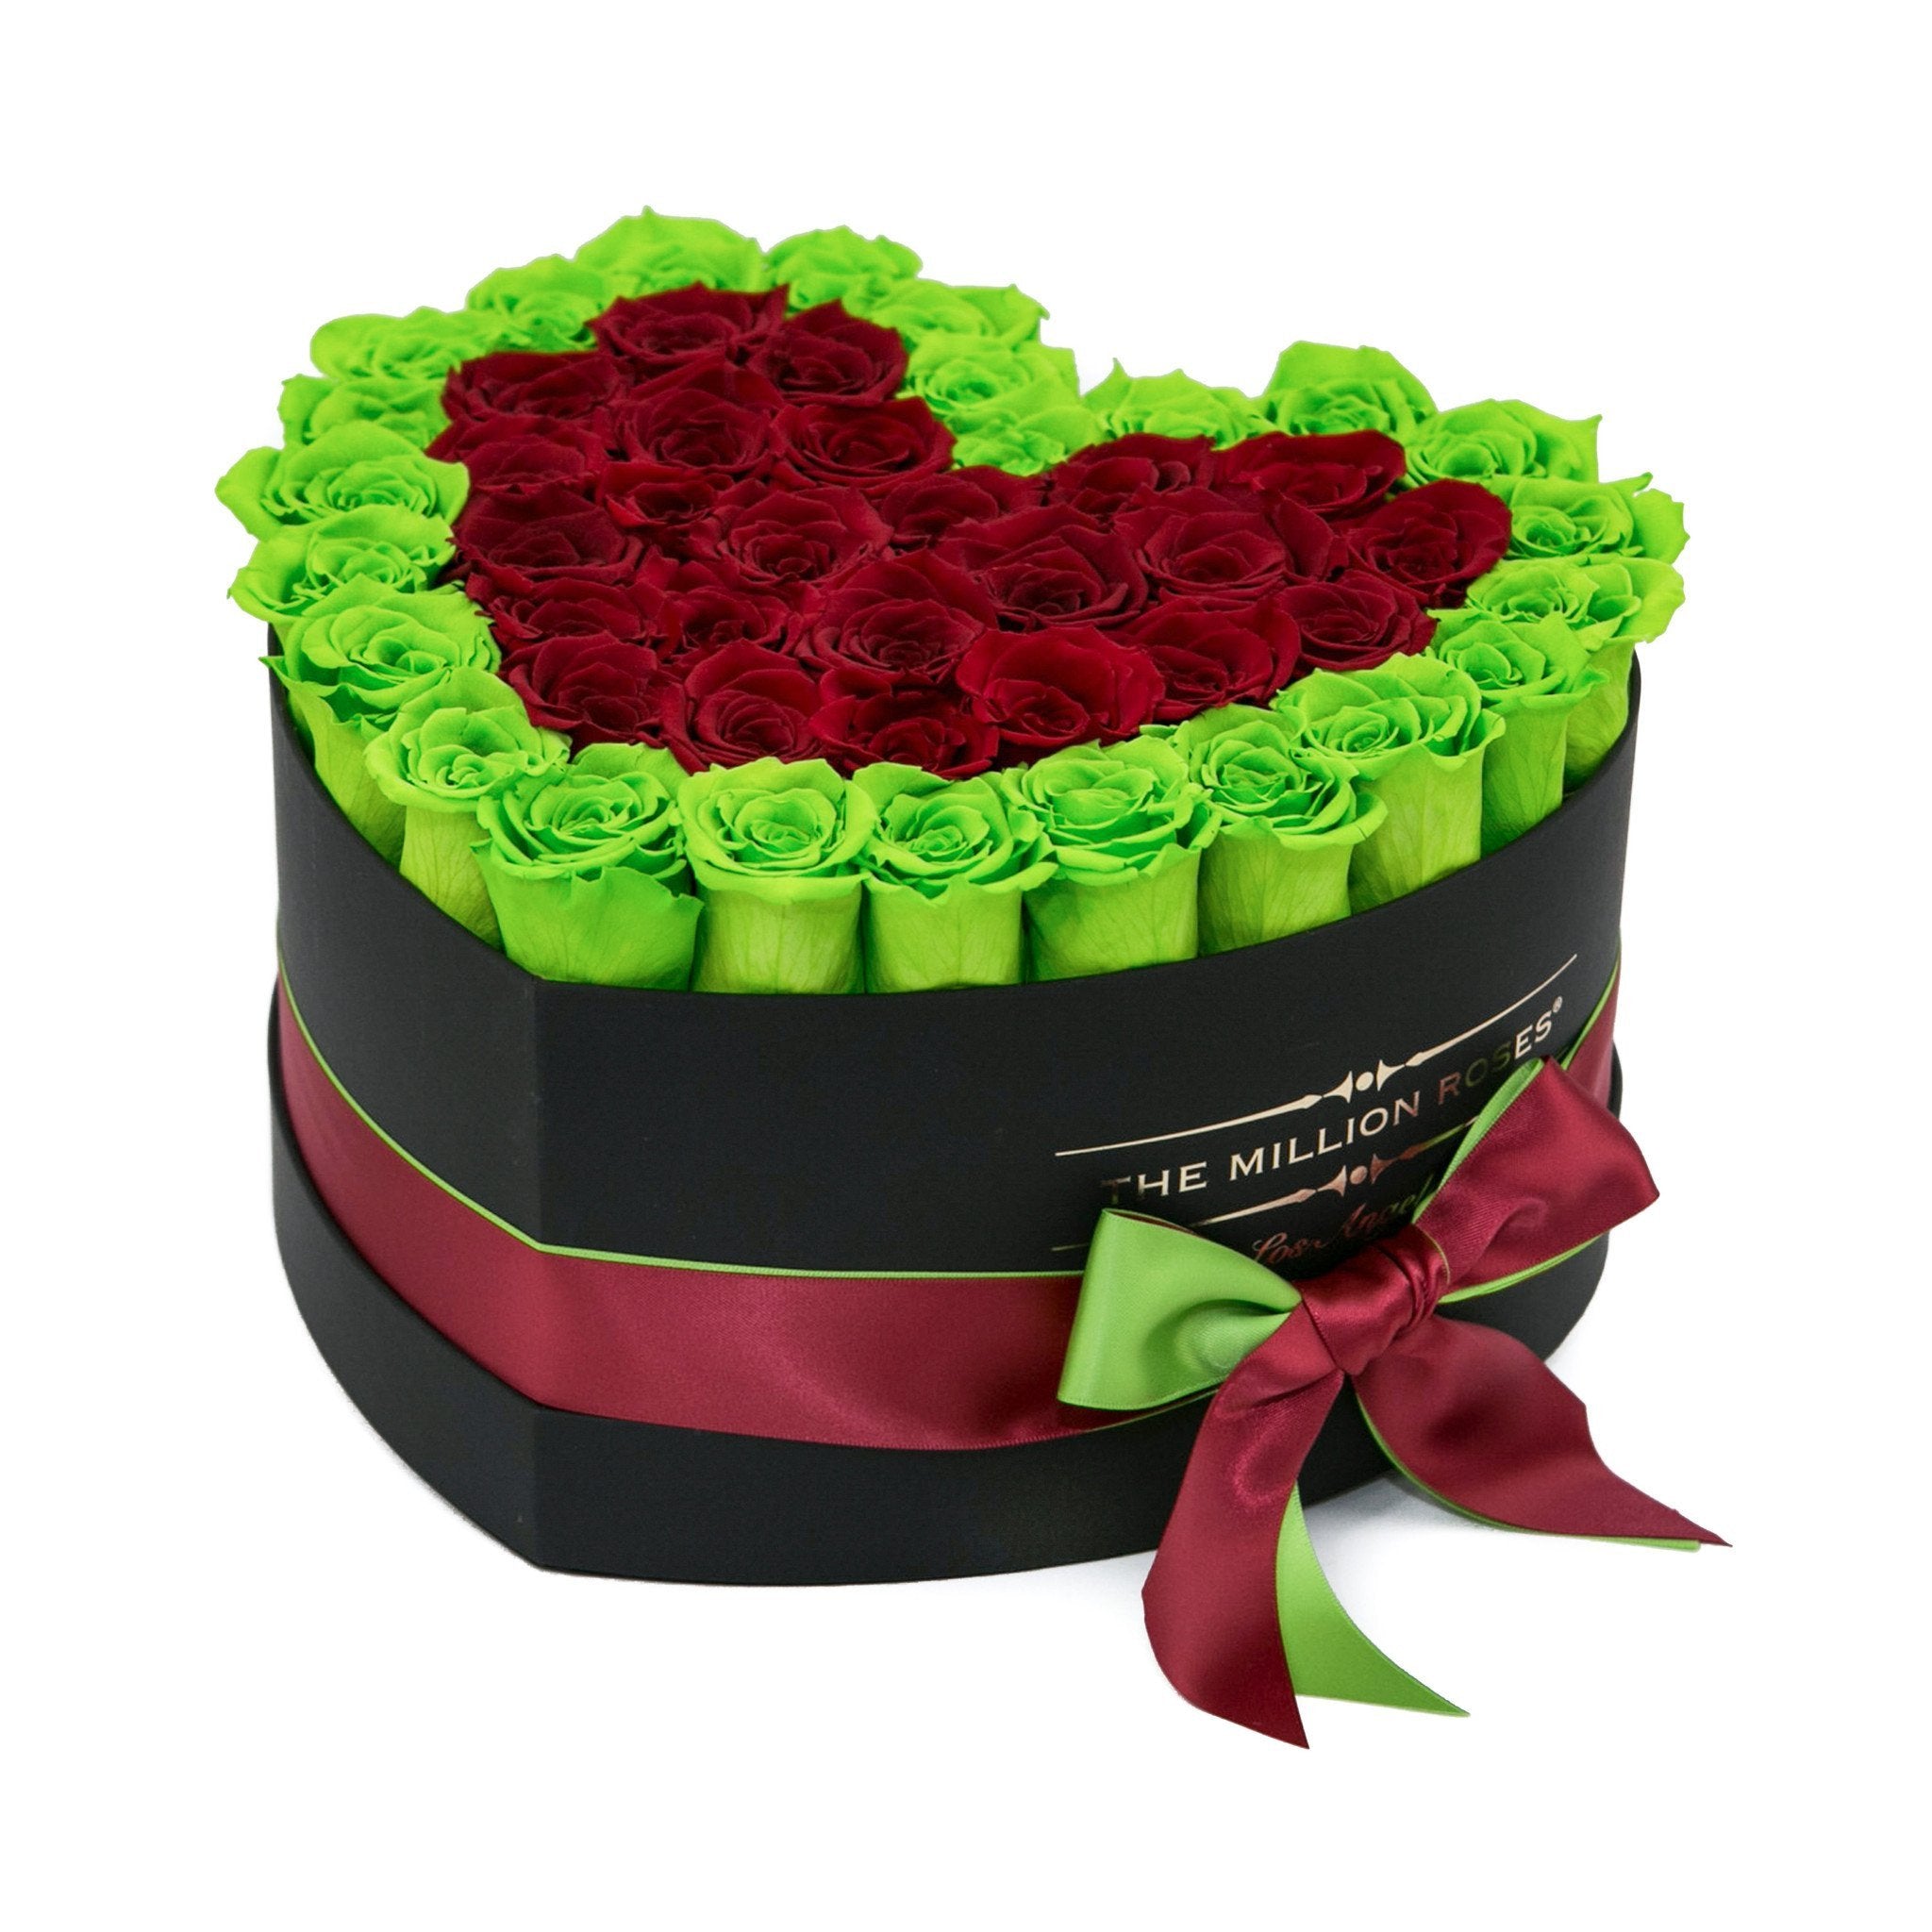 LOVE box - black - light-green&red roses green eternity roses - the million roses